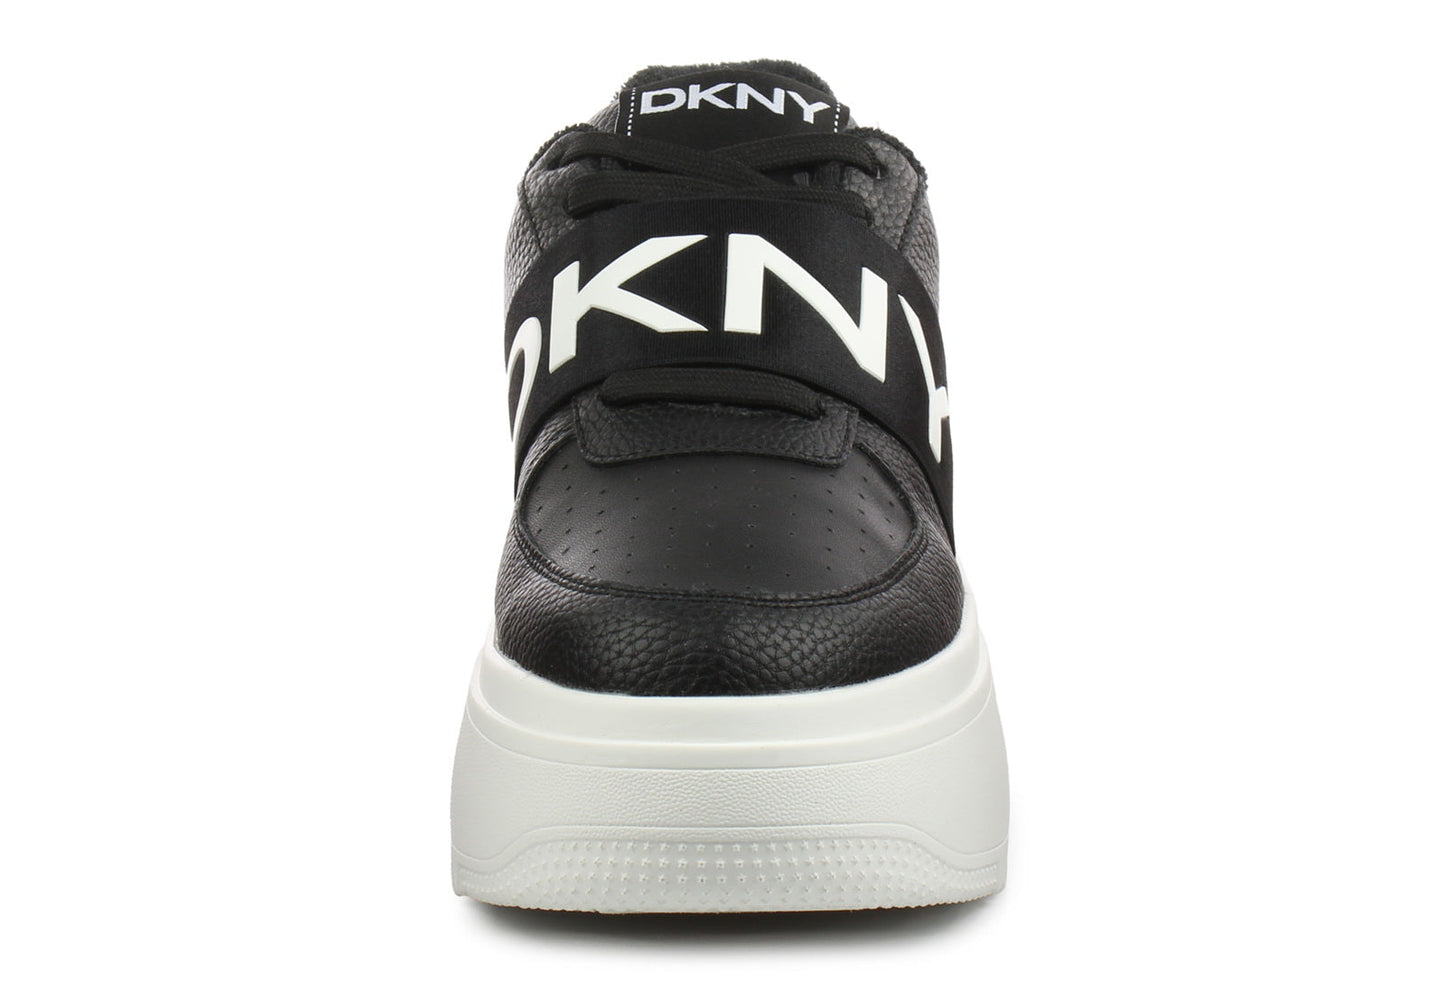 DKNY MADIGAN - SLIP ON NYCK - New York City Kicks